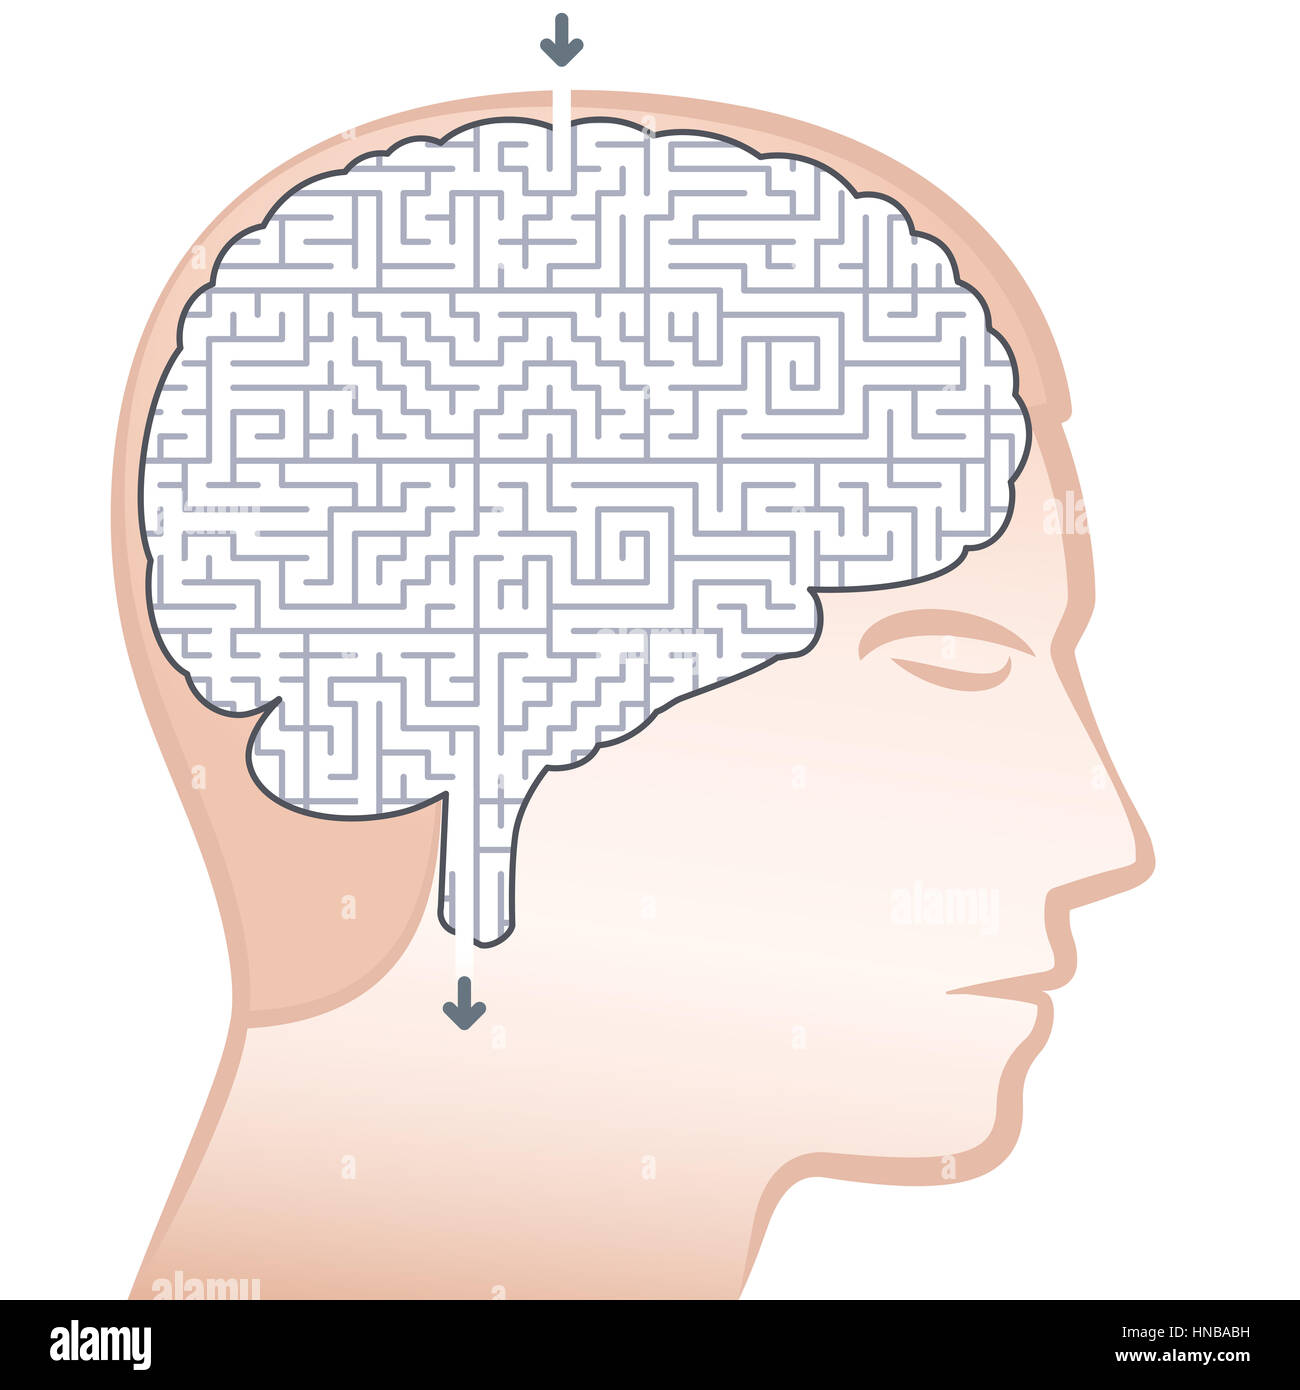 Gehirn-Labyrinth - Symbol für komplexe oder komplizierte denken. Stockfoto